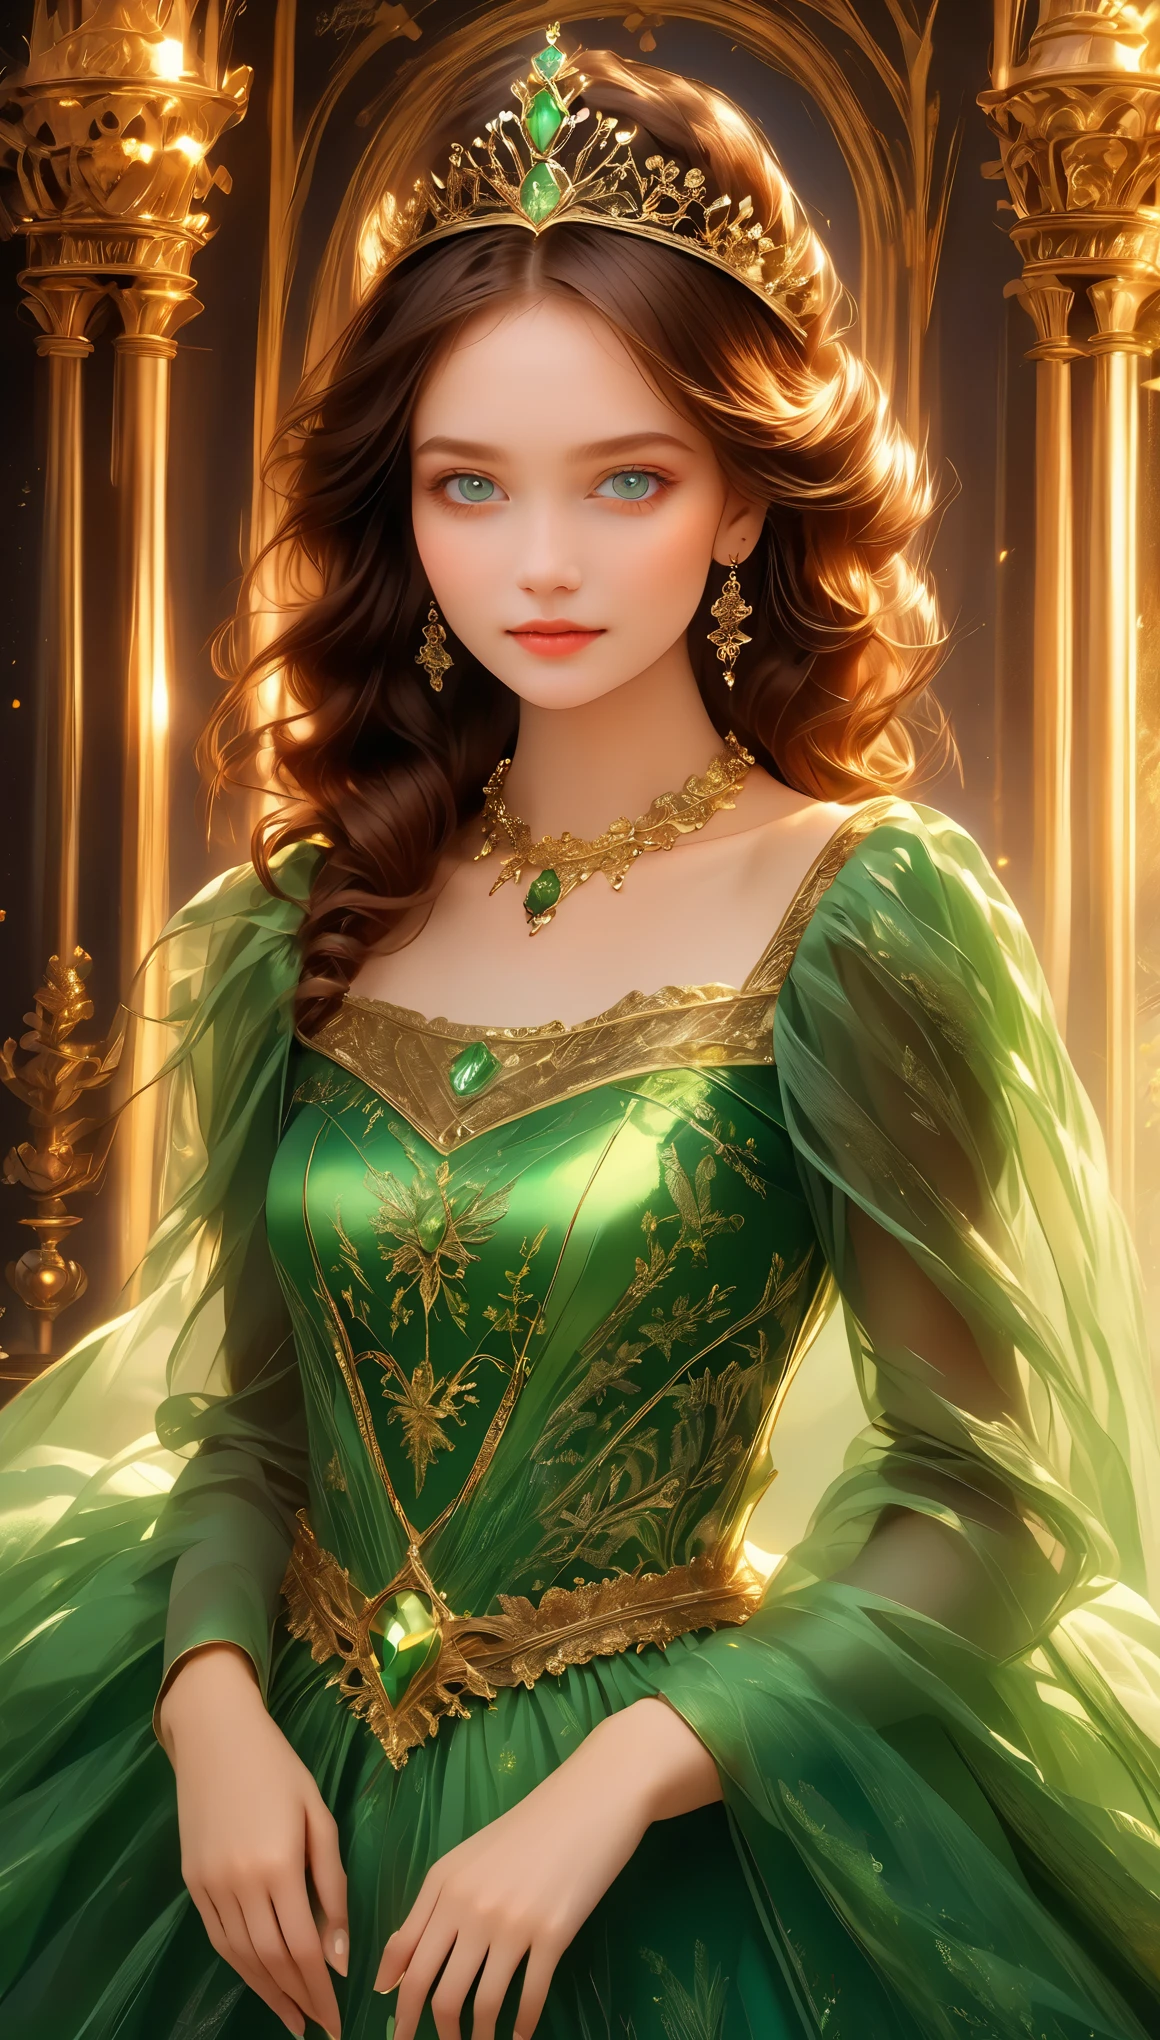 年轻女子, 棕色的头发, 绿眼睛, 绿色皇室礼服, 公主.